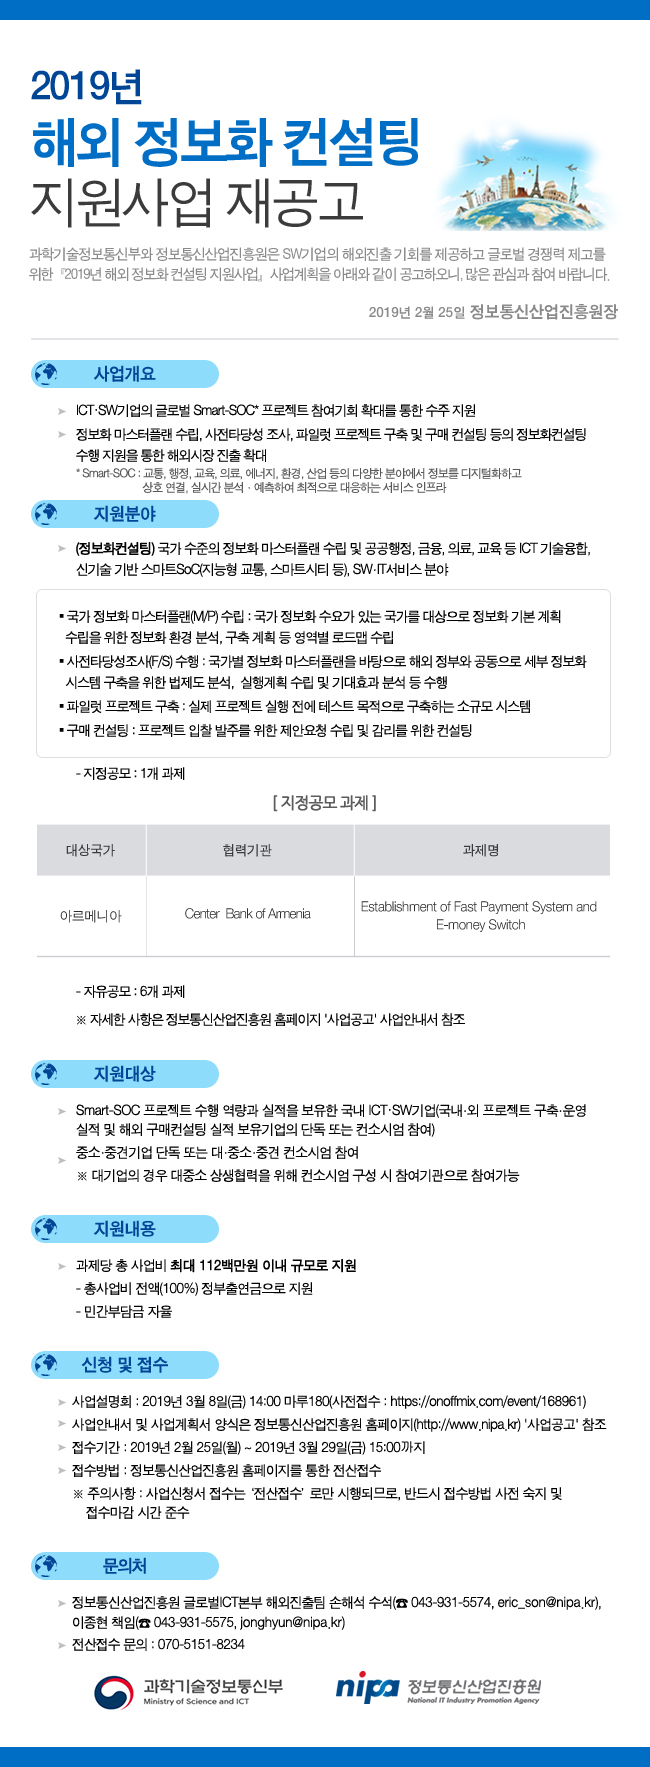 2019년 해외정보화컨설팅 지원사업 모집공고 안내문